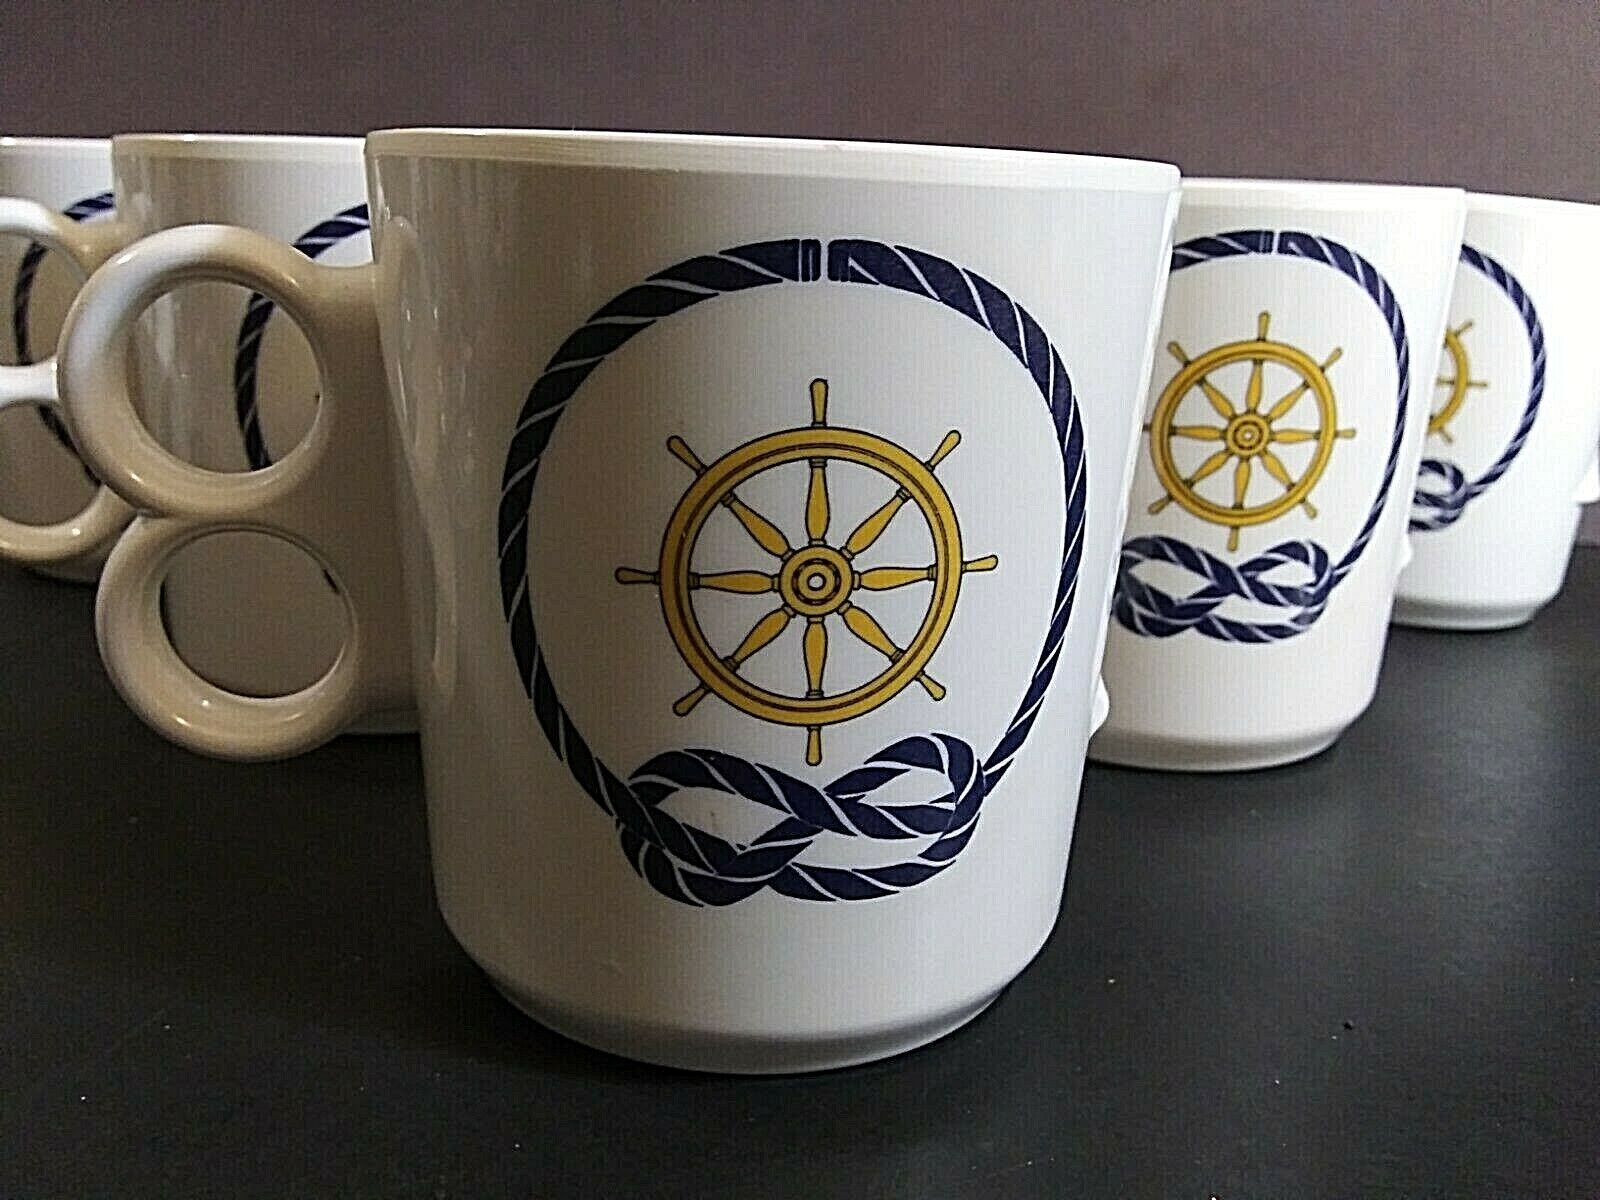 Nautical Melamine Mugs by Adolf Opel for Cartaffini lot of 6 Без бренда - фотография #3